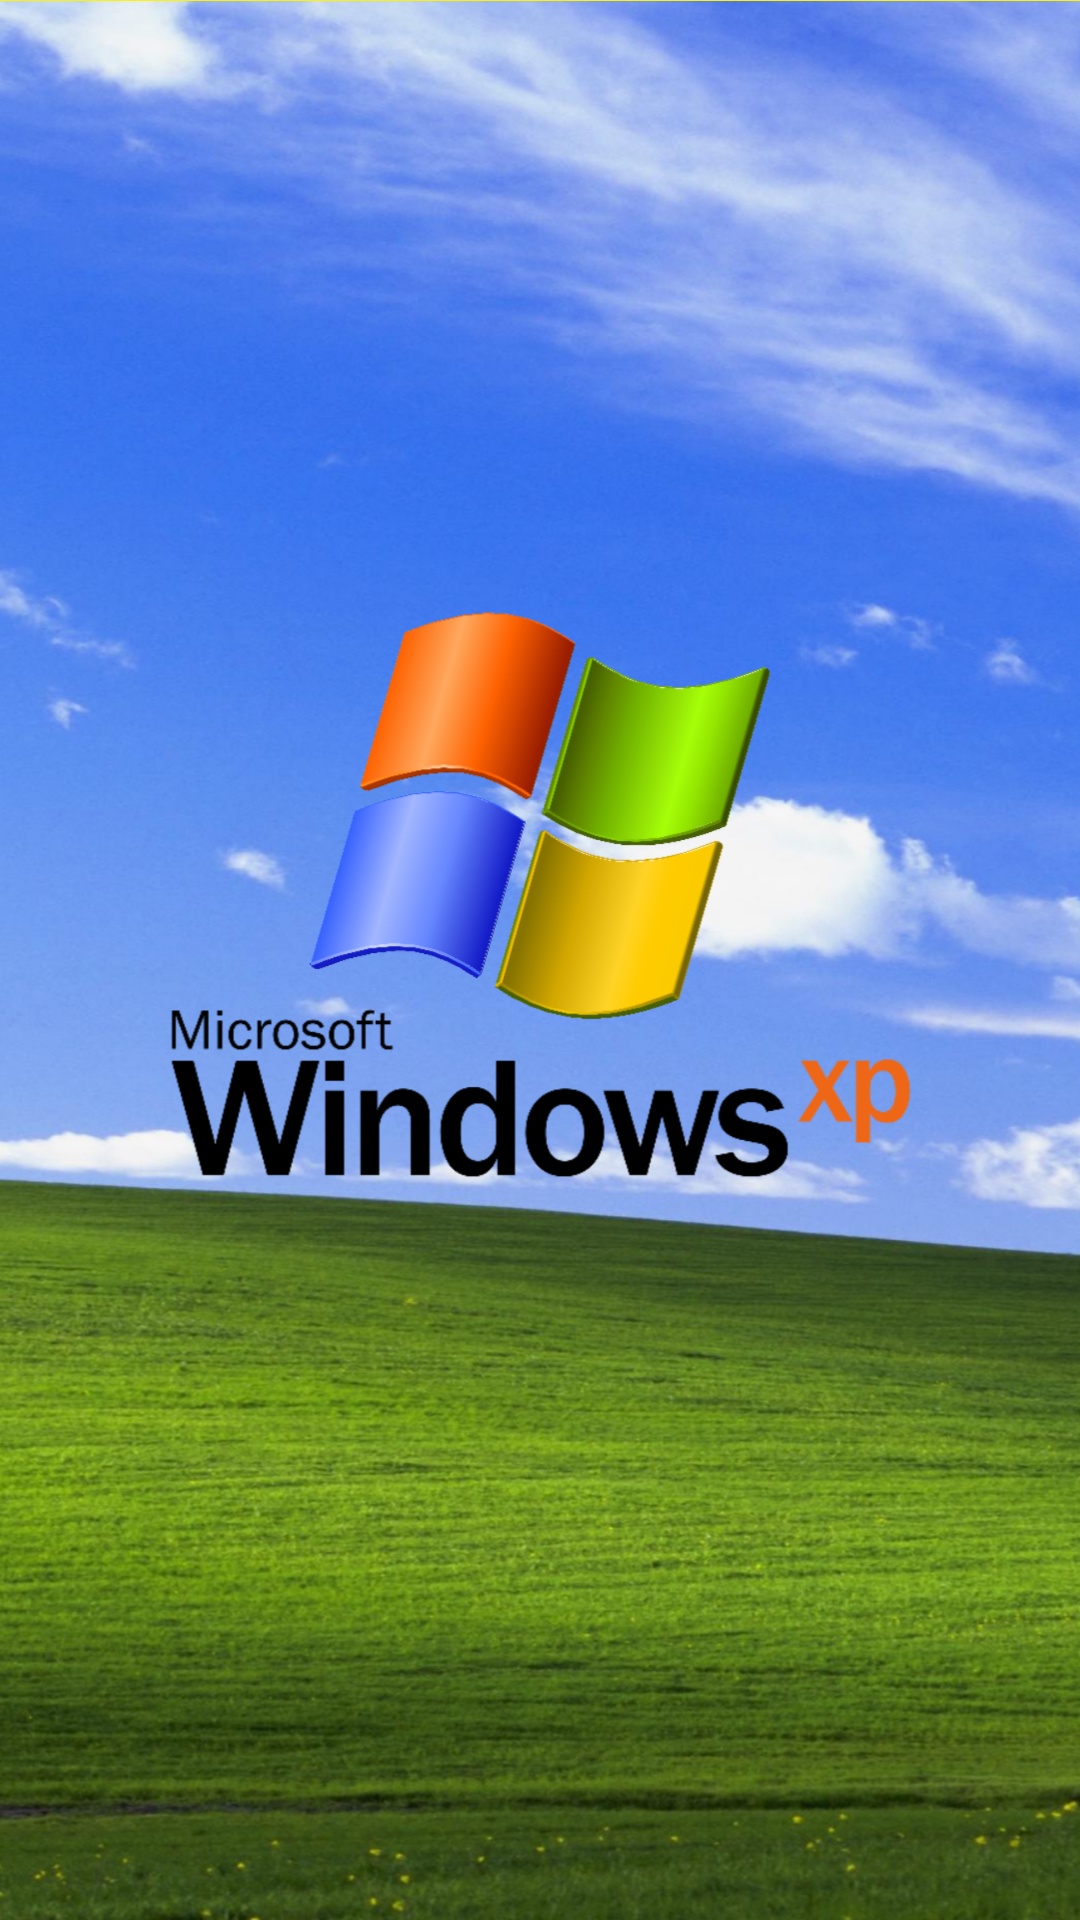 Hãy thể hiện sự tự hào với Windows XP Logo trên màn hình máy tính của bạn. Với màu xanh chủ đạo tươi sáng và các đường nét thanh lịch, logo đại diện cho sự tinh tế và chuyên nghiệp của Windows XP. Thêm một chút tươi mới cho màn hình của bạn với logo này và cảm nhận sự khác biệt ngay lập tức.